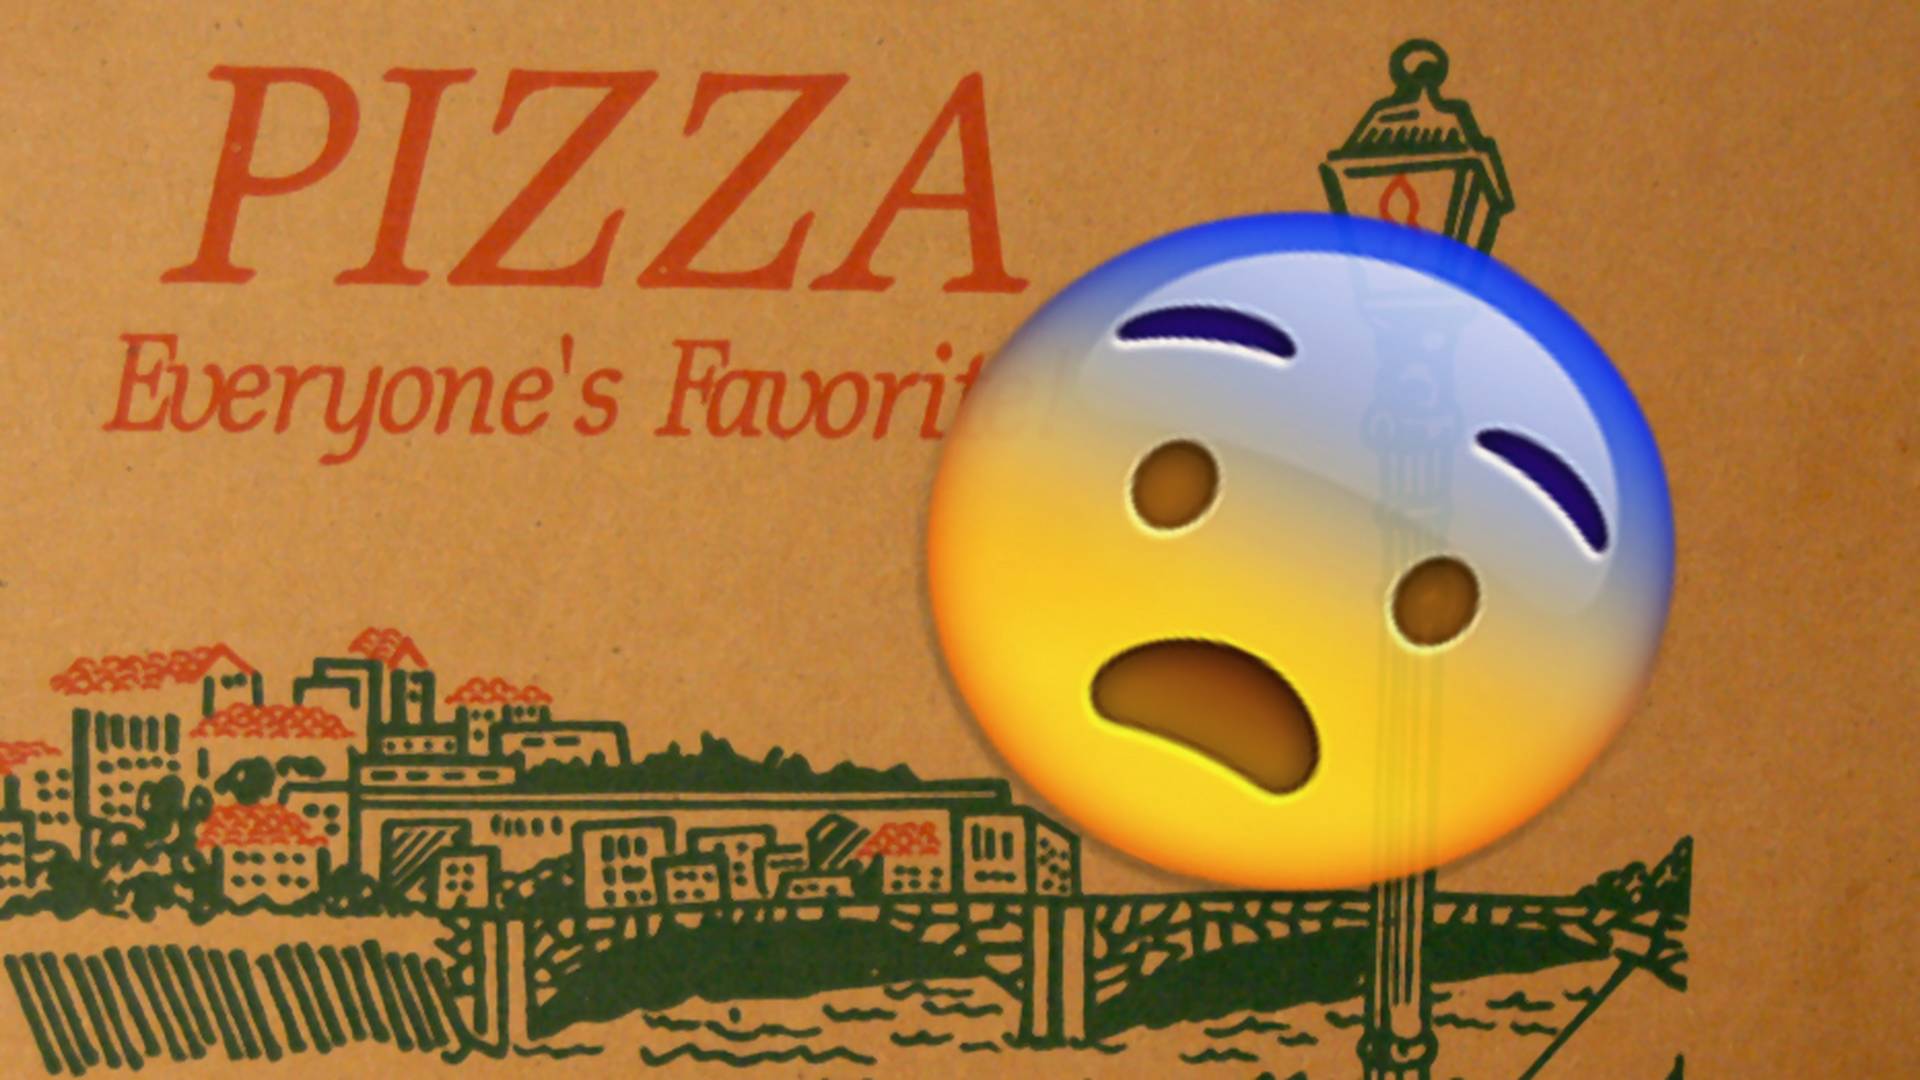 Internauci z całego świata oburzeni z powodu jednego zdjęcia pizzy